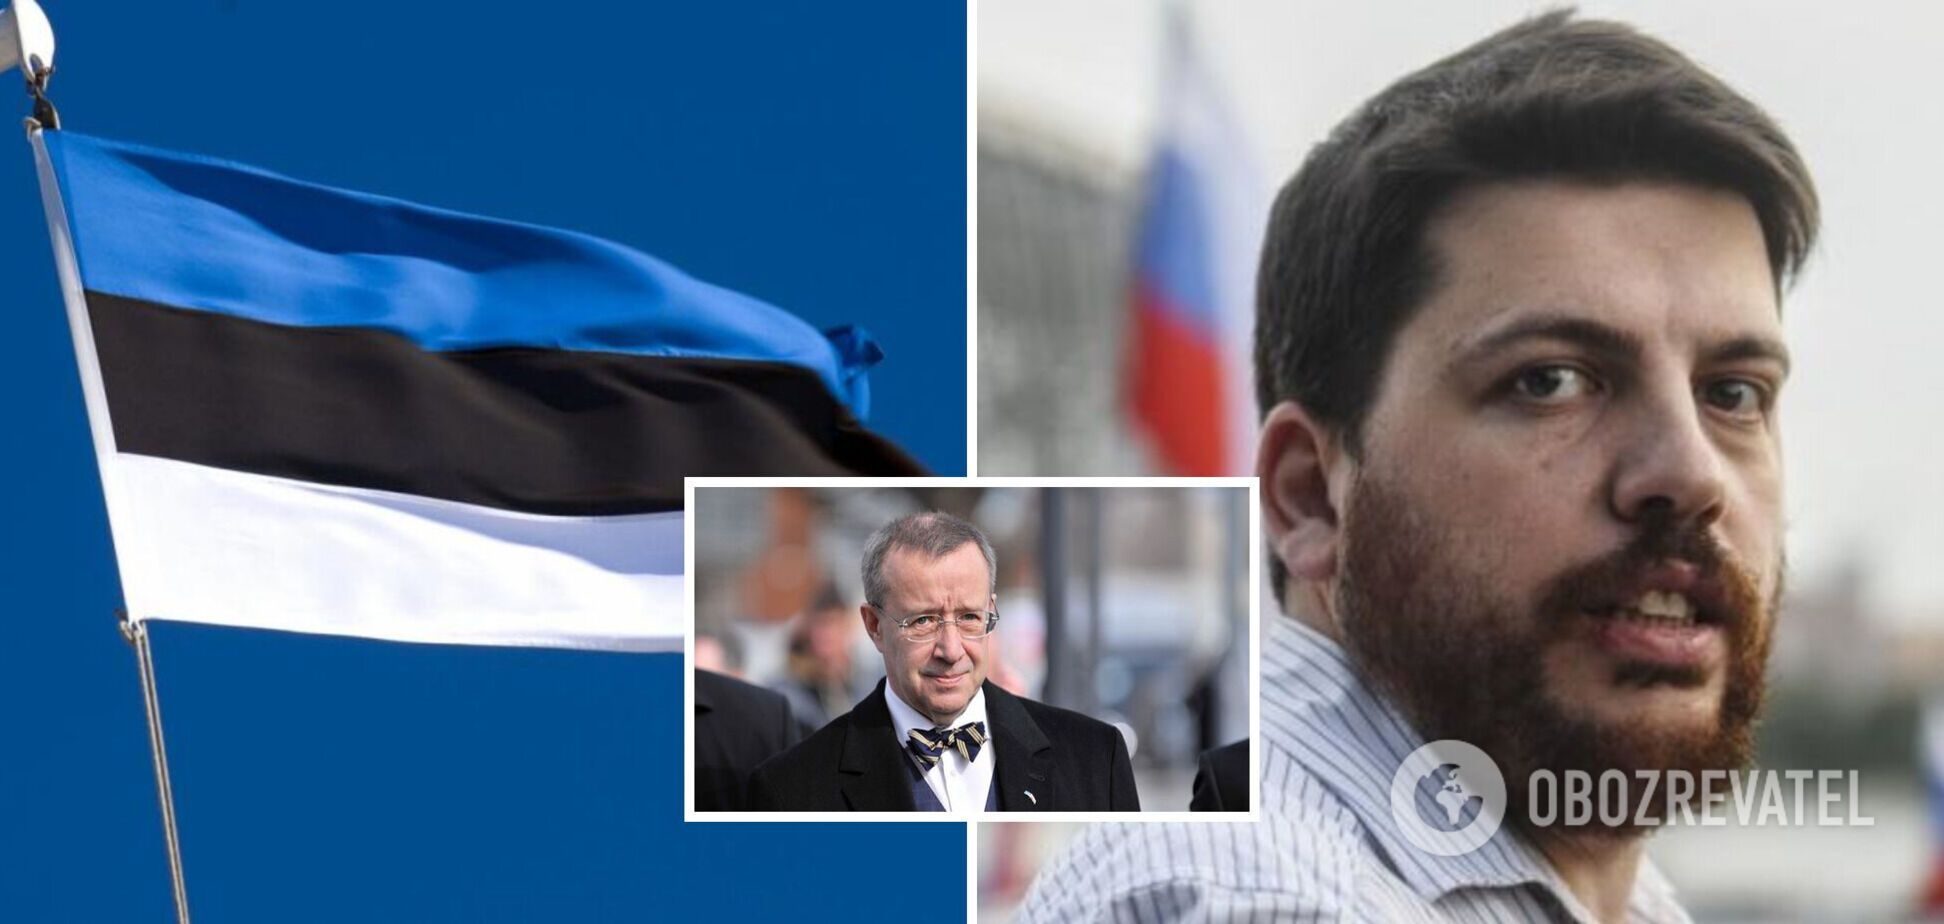 'Не угрожайте нам': экс-президент Эстонии дал советы российским либералам, требующим 'план Маршалла' для РФ